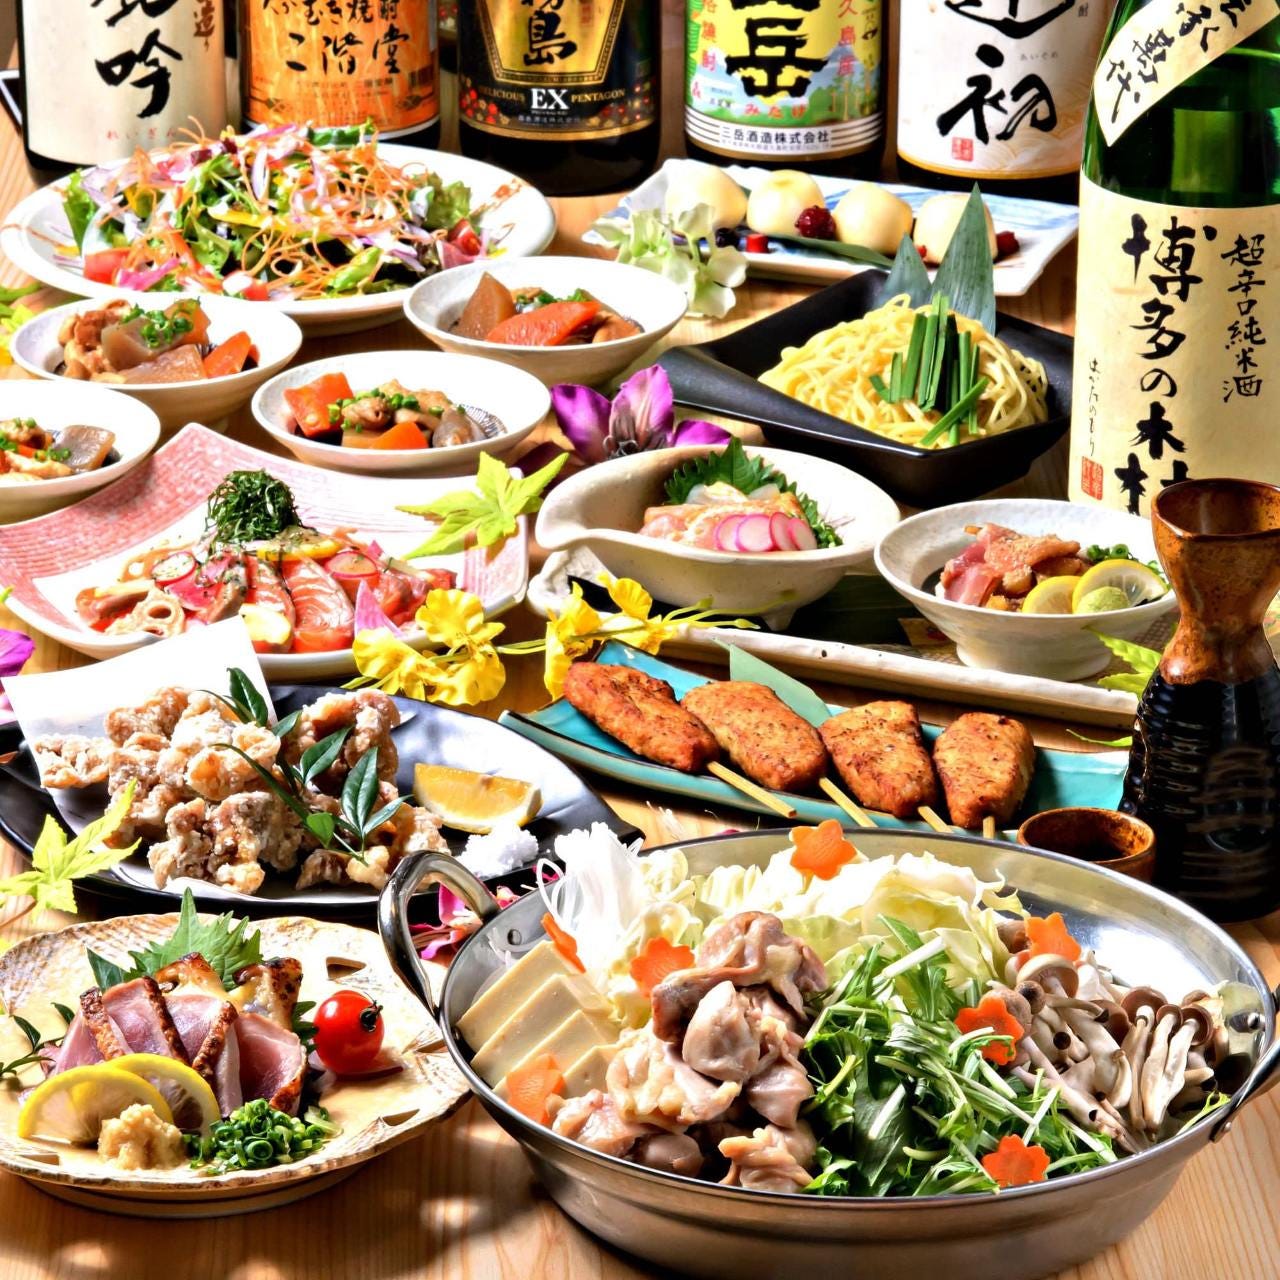 九州料理を満喫できるコースは
各種ご宴会にピッタリ♪